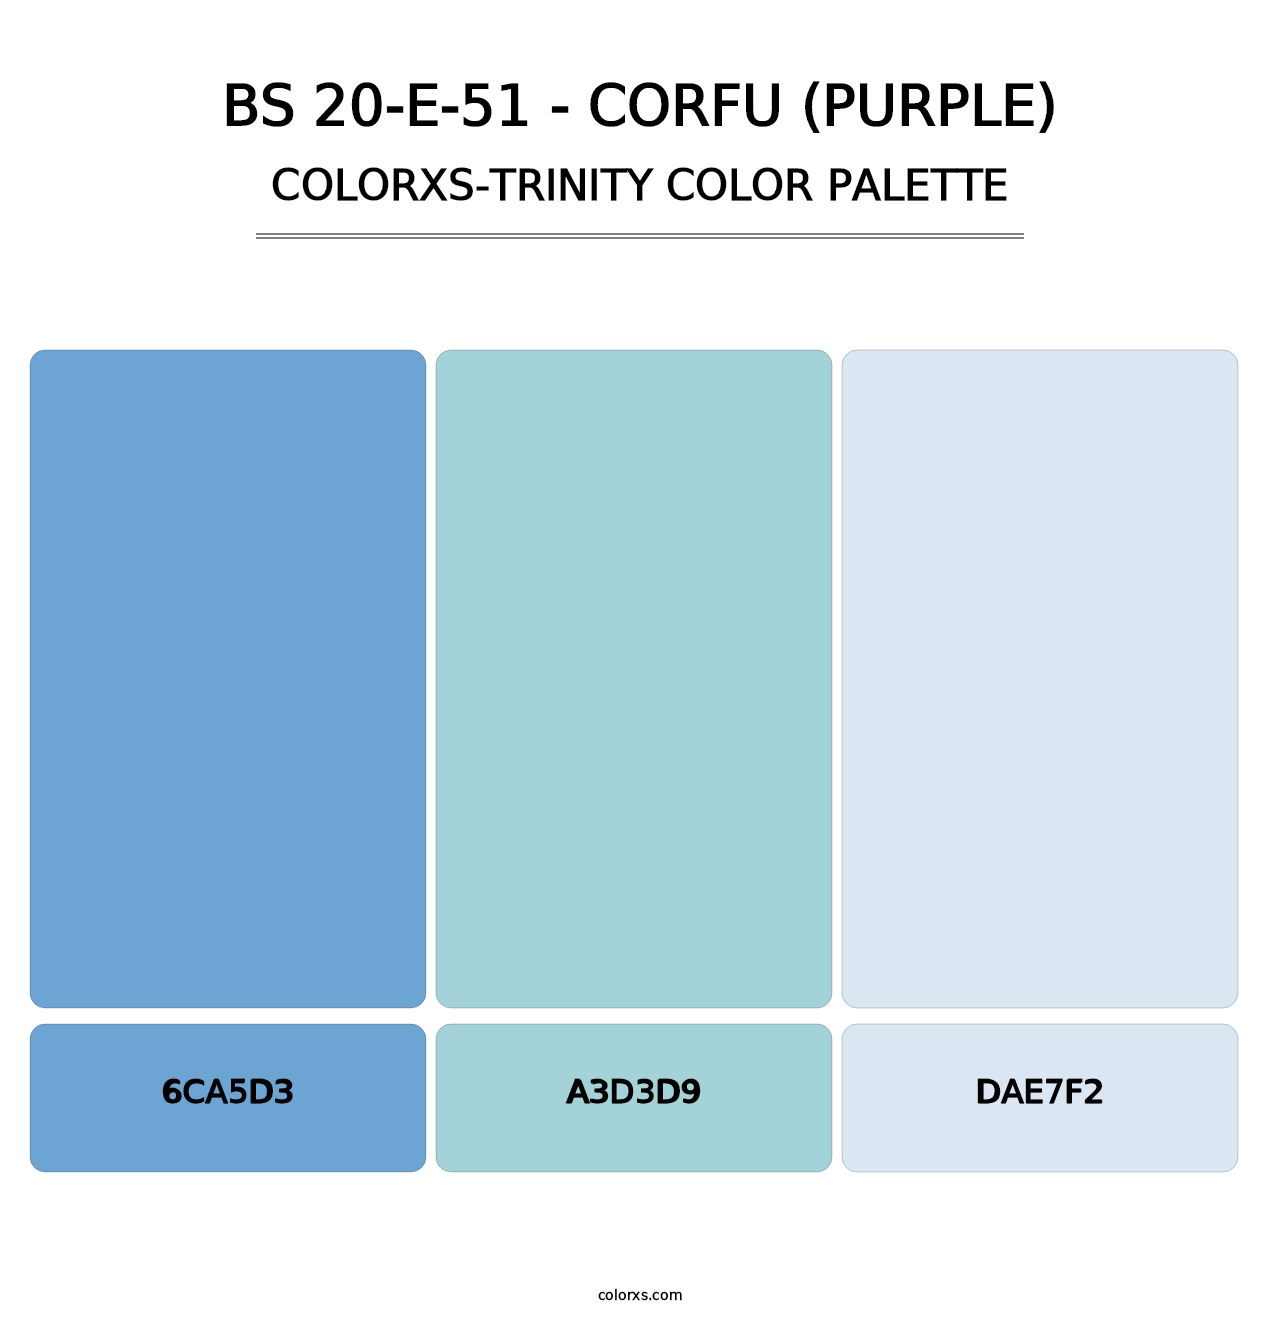 BS 20-E-51 - Corfu (Purple) - Colorxs Trinity Palette